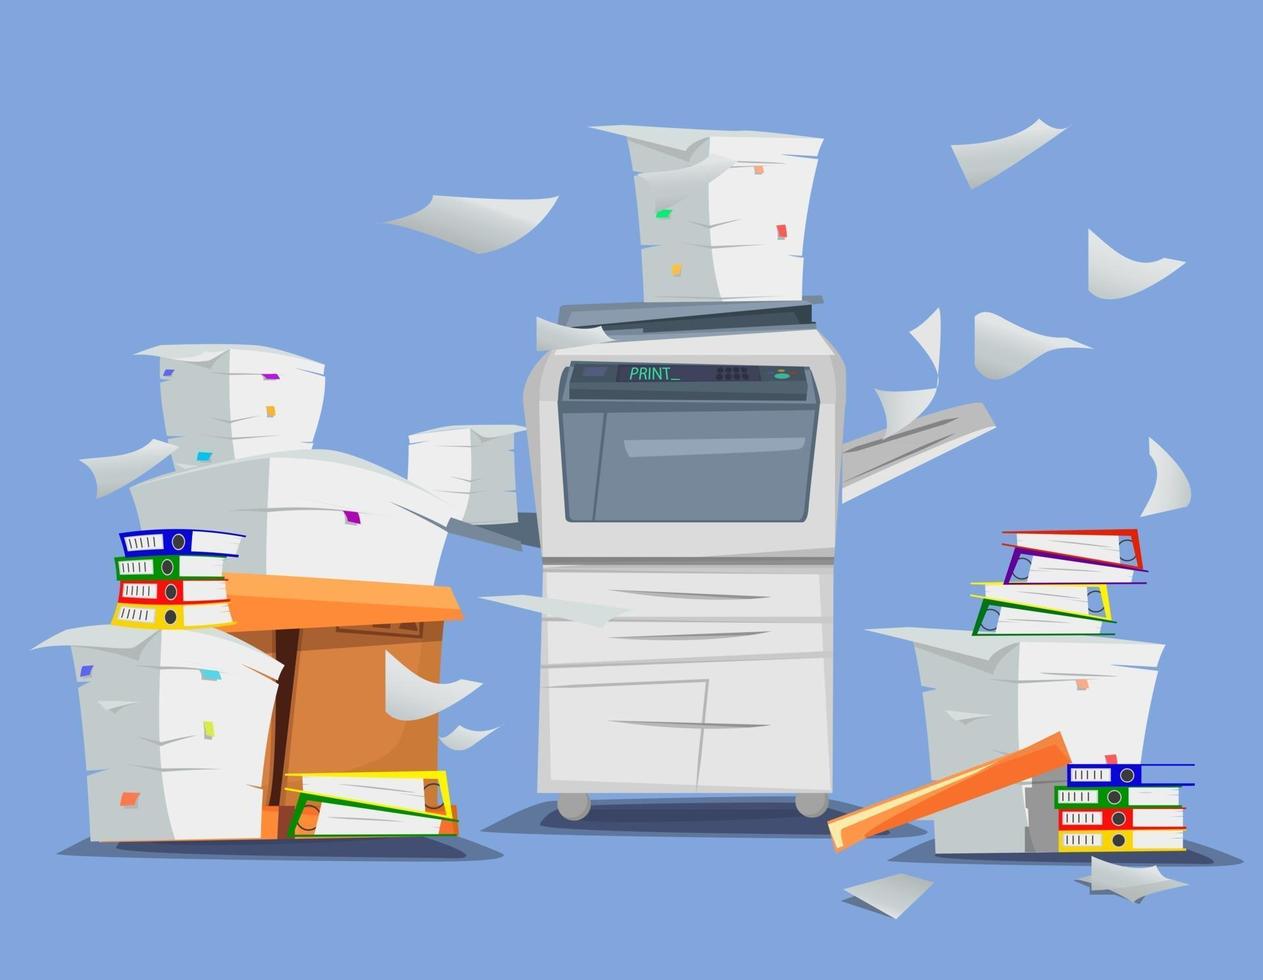 impresora multifunción de oficina escáner copiadora con papel volador aislado en el fondo fotocopiadora con pila de documentos pila de papeles en cajas de cartón ilustración de dibujos animados de vector diseño plano